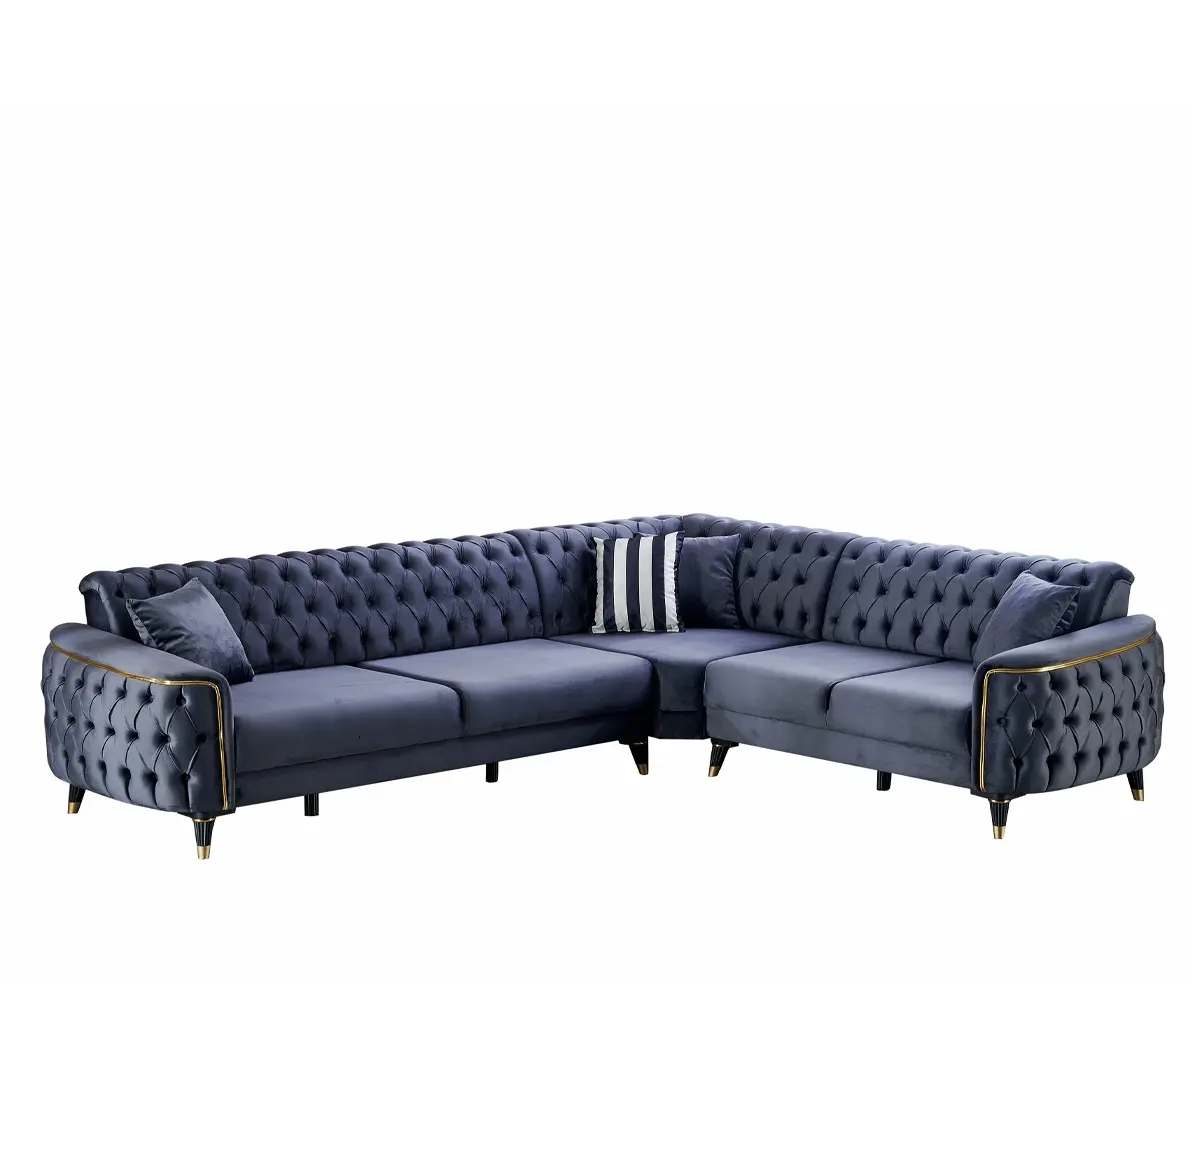 Luxe petit appartement tissu grands canapés meubles Simple moderne contemporain Design canapé ensemble meubles de maison luxueux turc